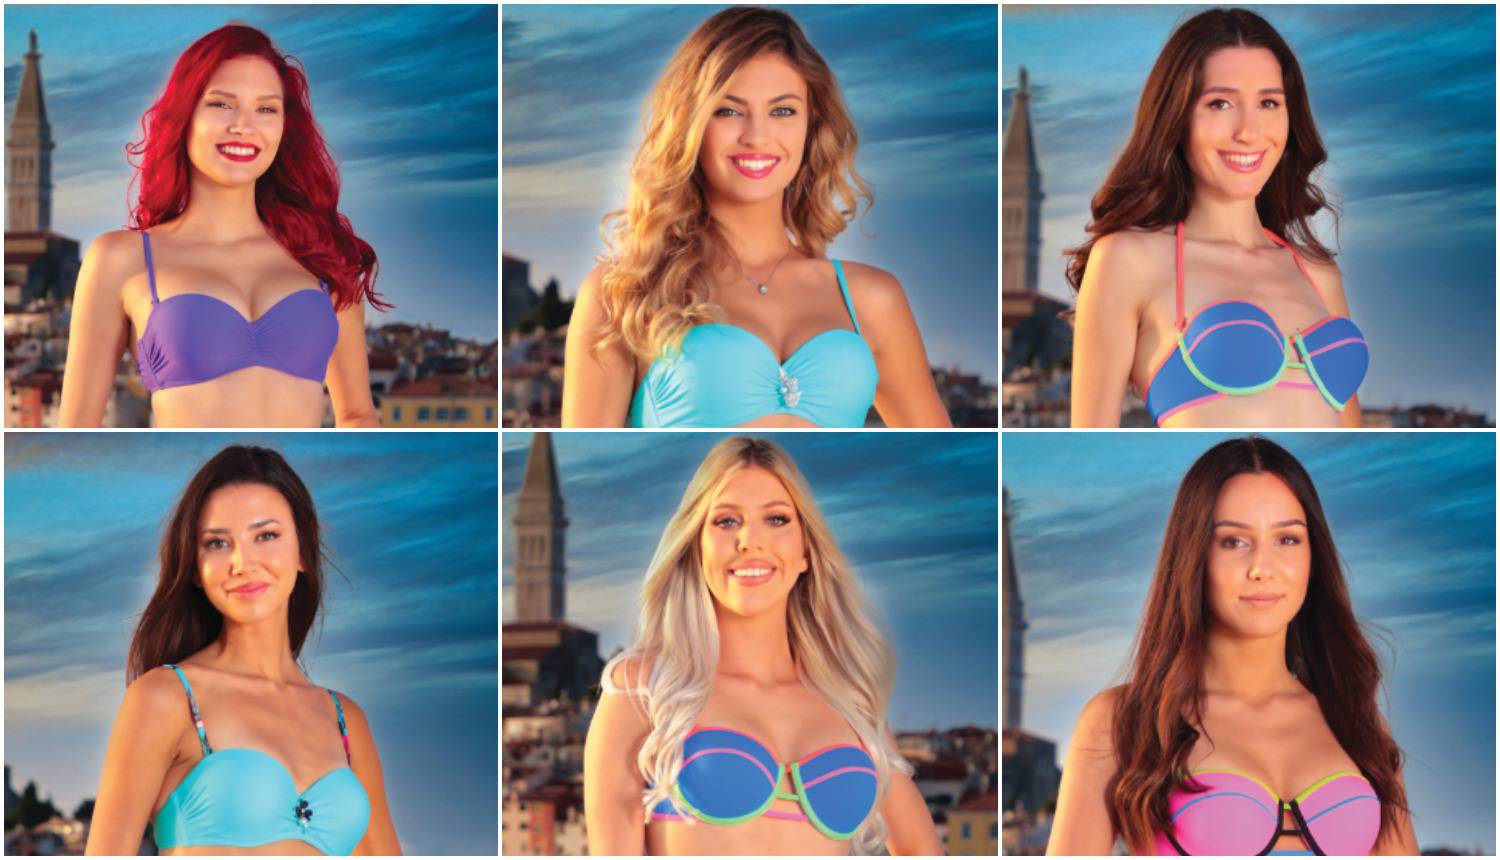 Ovih 12 ljepotica borit će se za titulu nove Kraljice Hrvatske, koja djevojka je vaš favorit?